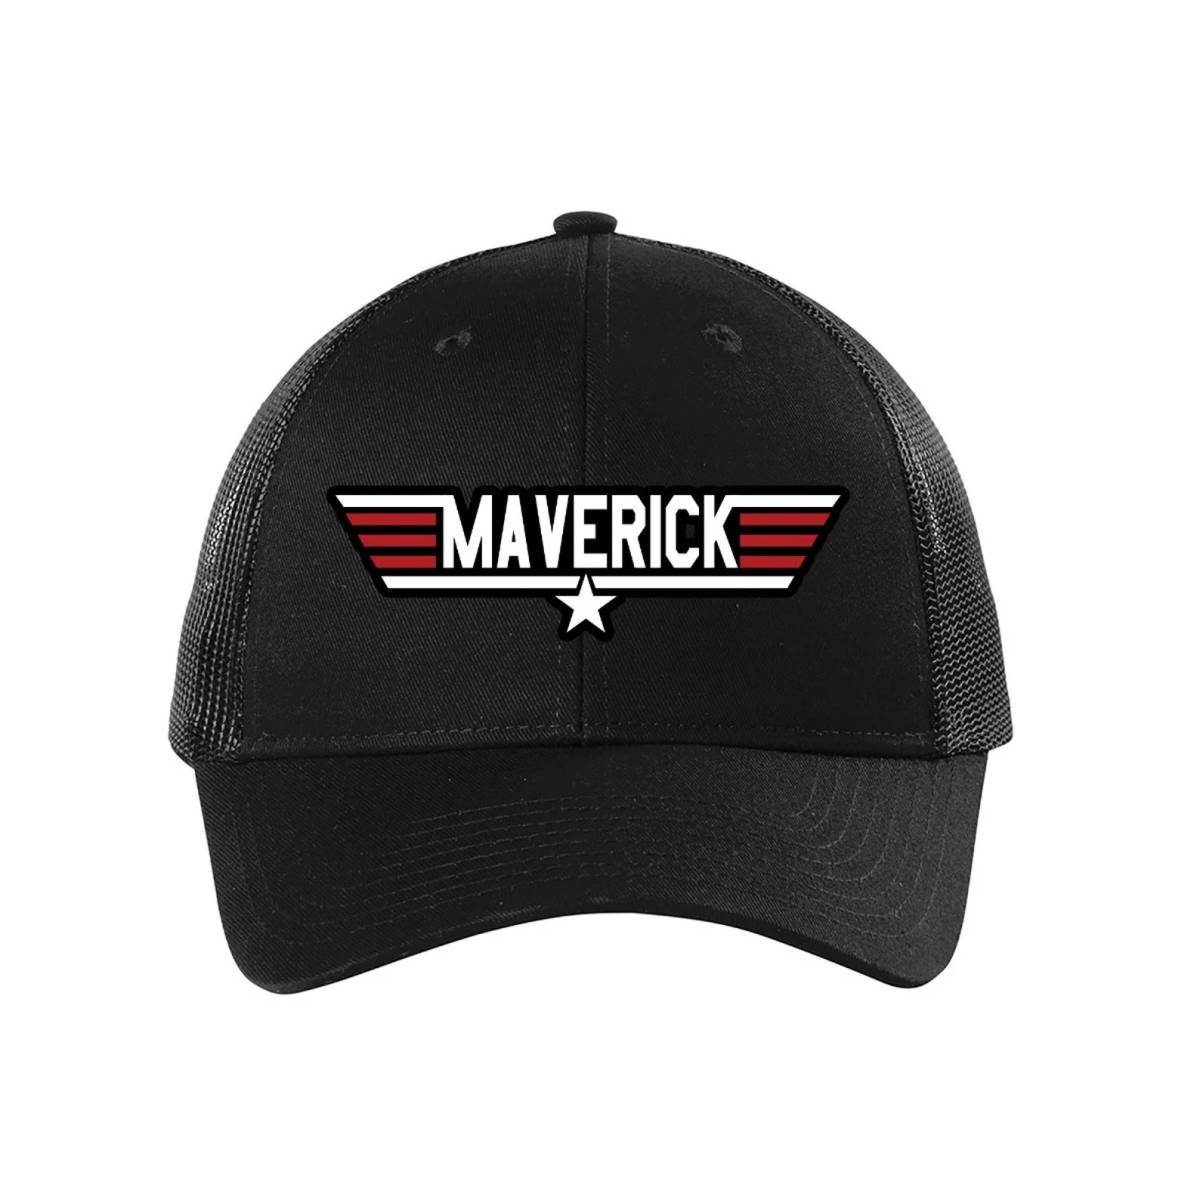 世界の 海外 限定 帽子 キャップ 4 マーヴェリック トムクルーズ